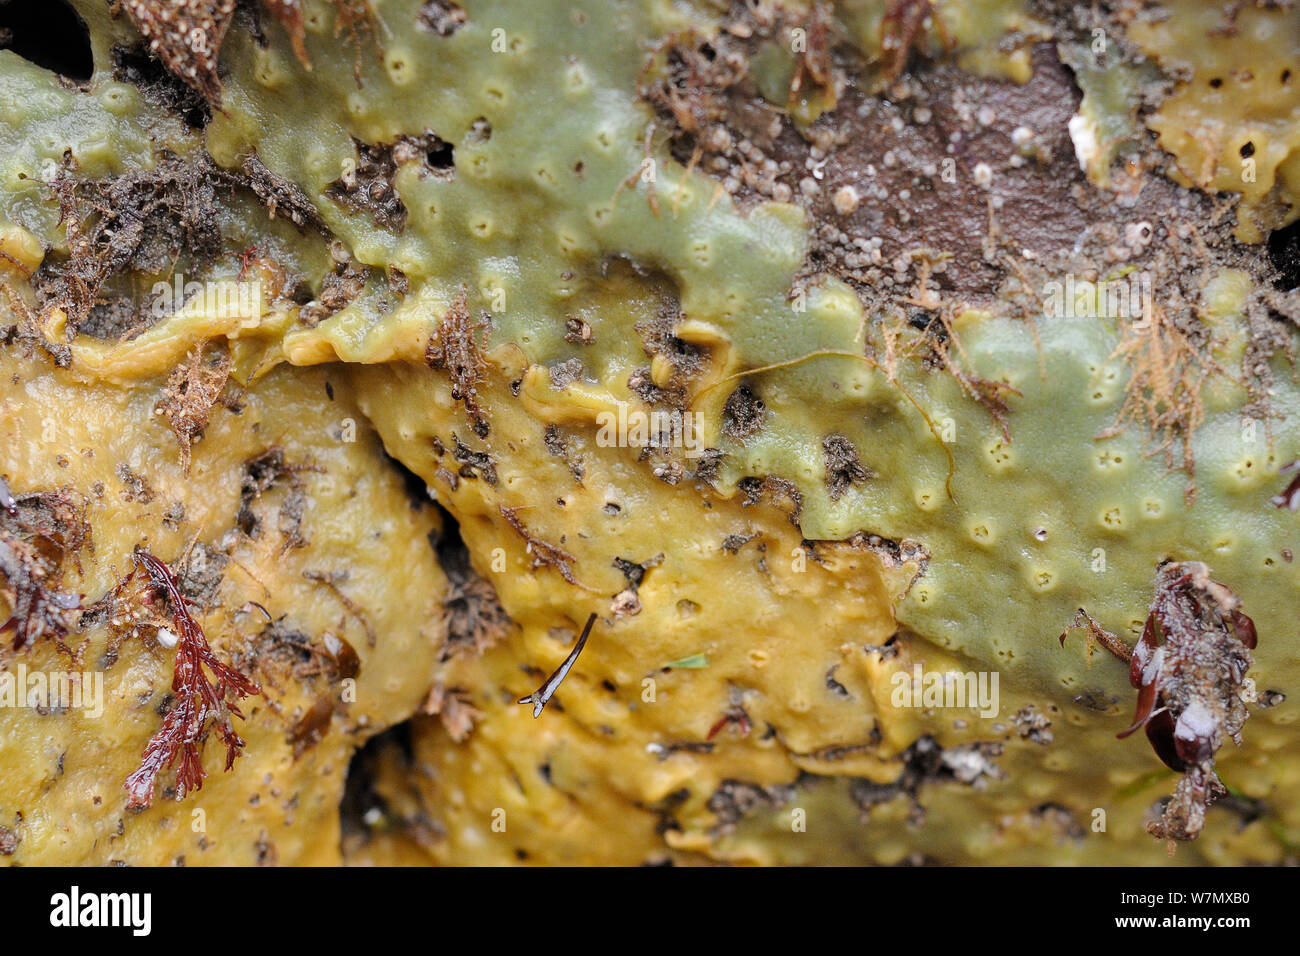 Verde e arancione forme di Breadcrumb spugna (Halichodria panicea) cresce sulle rocce esposte su una molla a bassa marea, North Berwick, East Lothian, UK, Luglio. Foto Stock